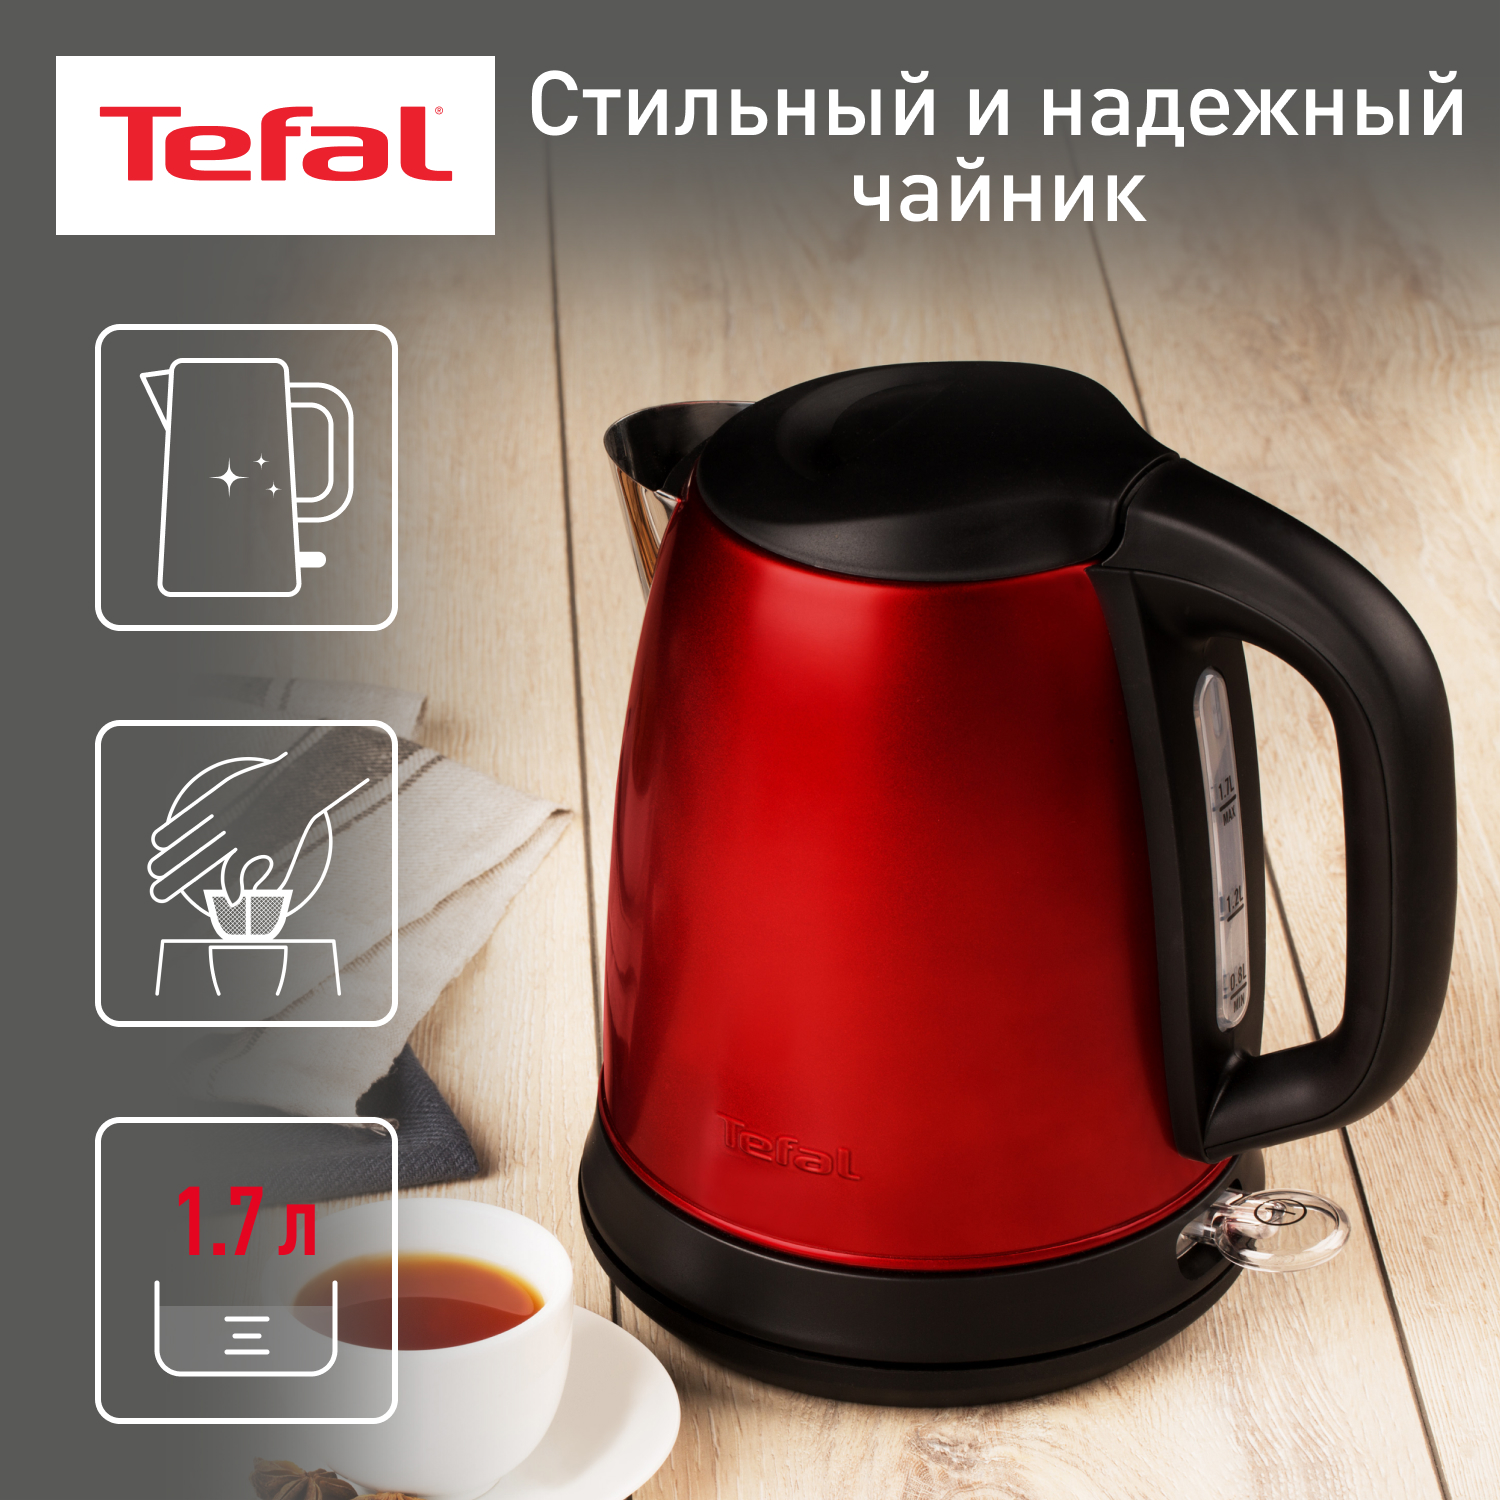 Чайник электрический Tefal Confidence KI270530, 1.7 л, красный/черный фильтр tefal zr009002